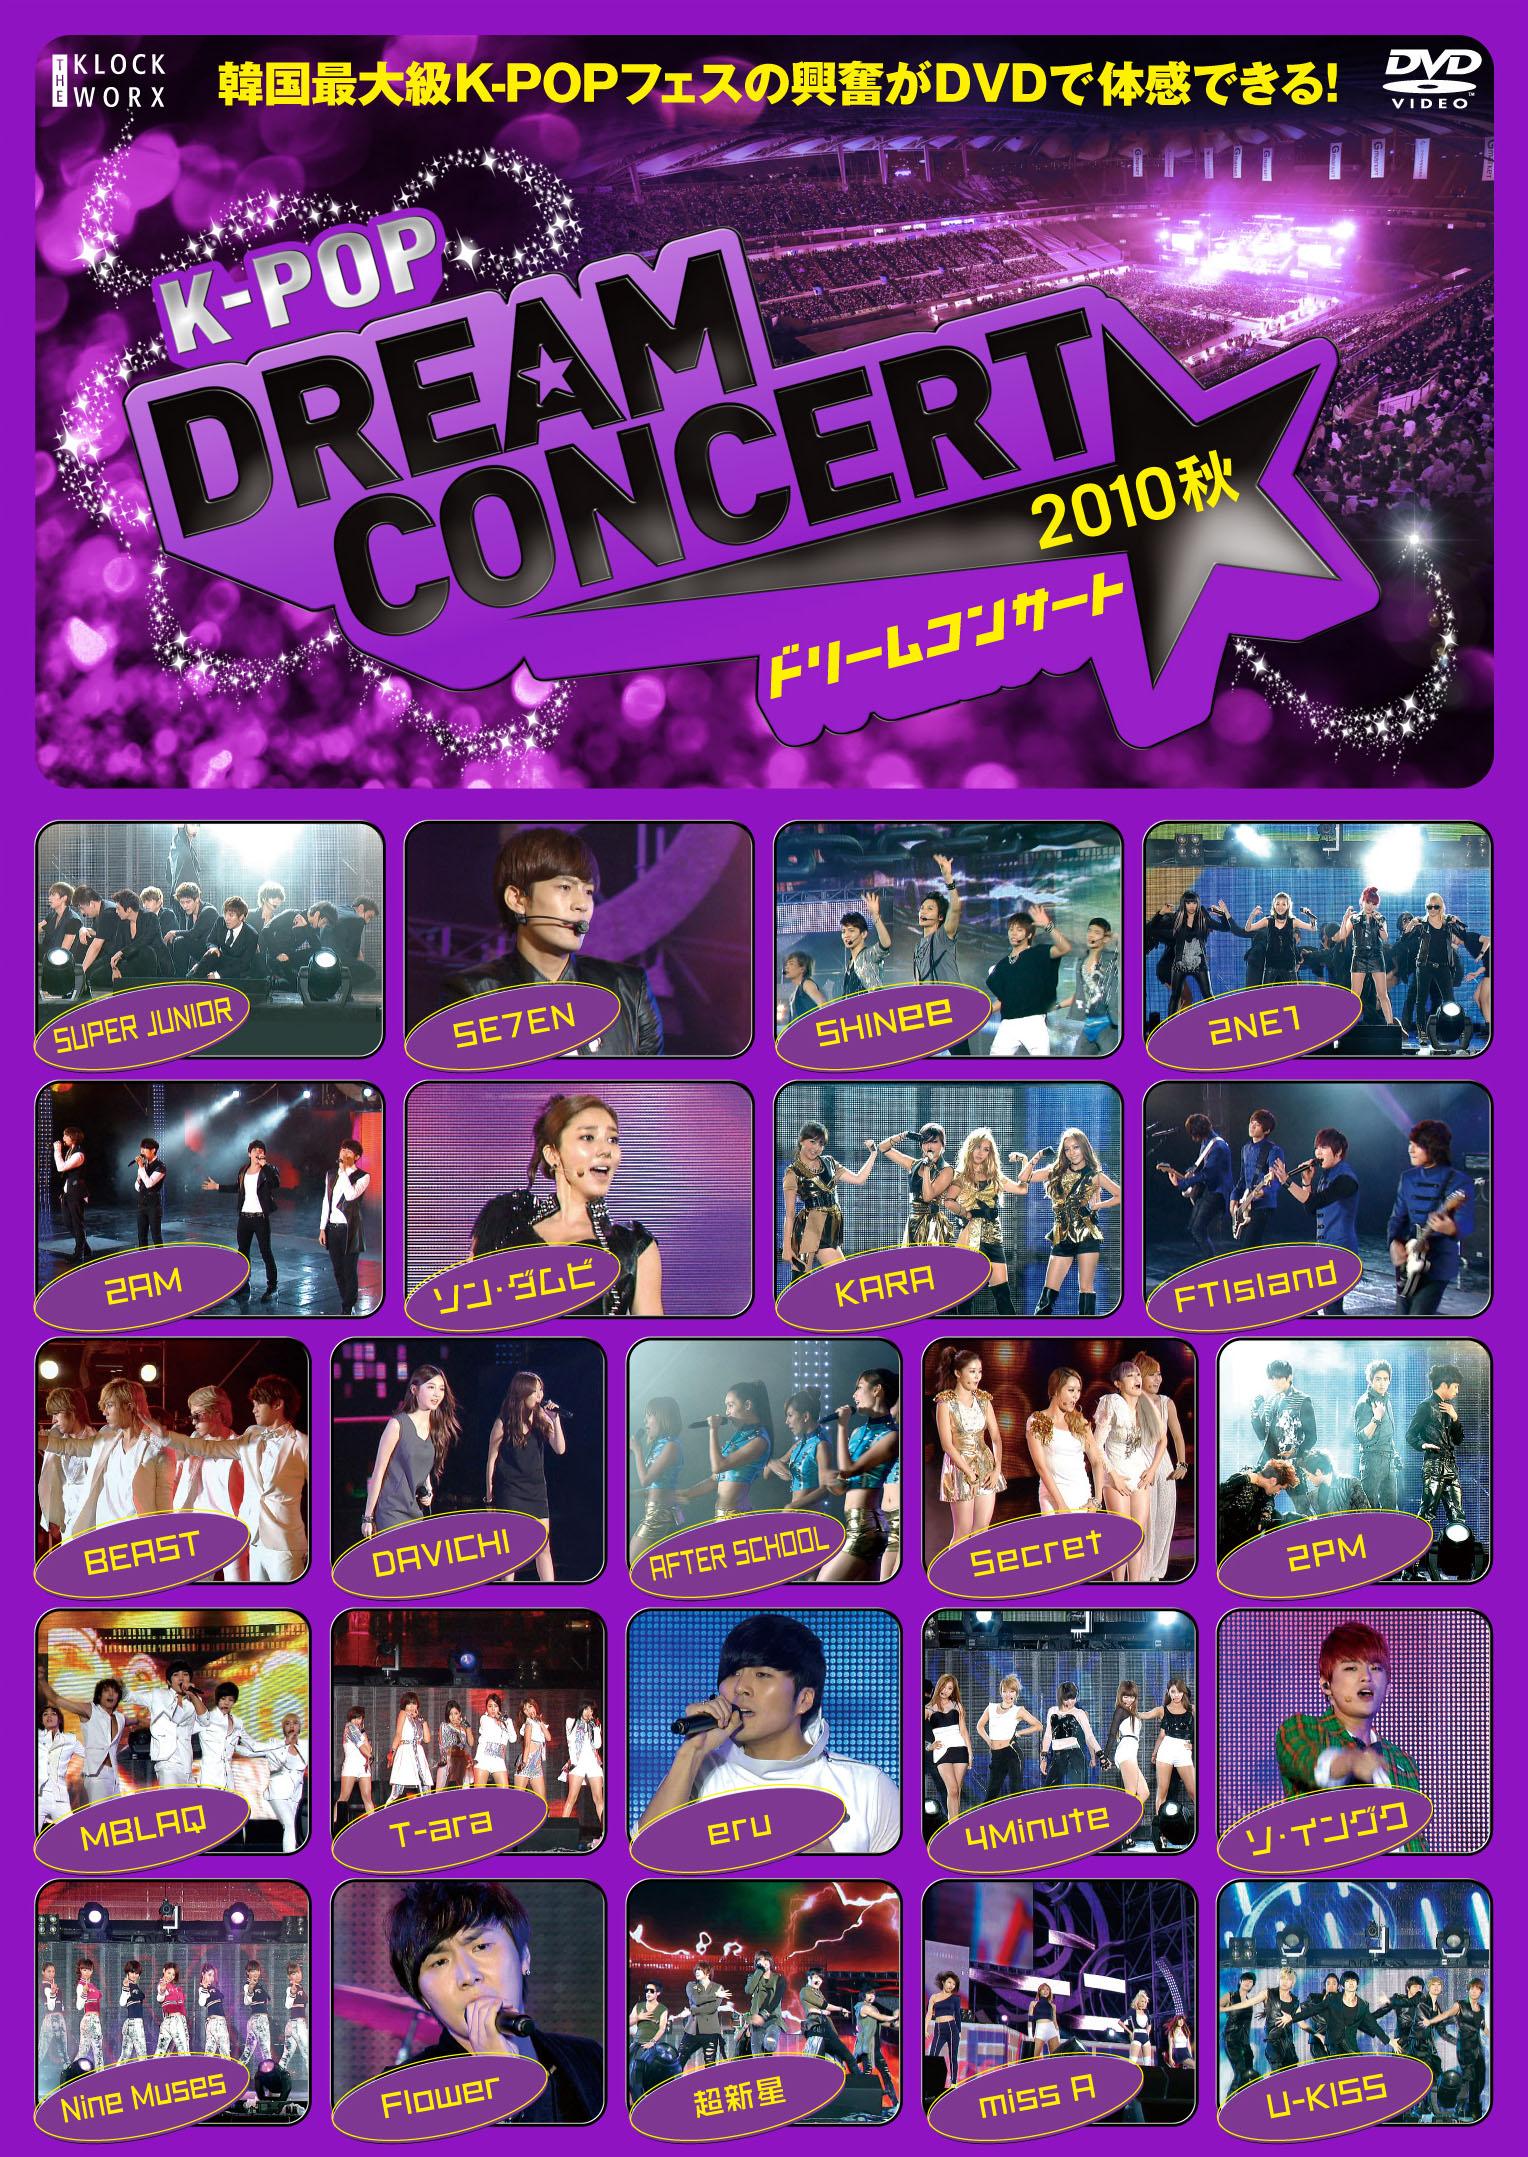 K-POP ドリームコンサート 2010 春 [DVD] g6bh9ry